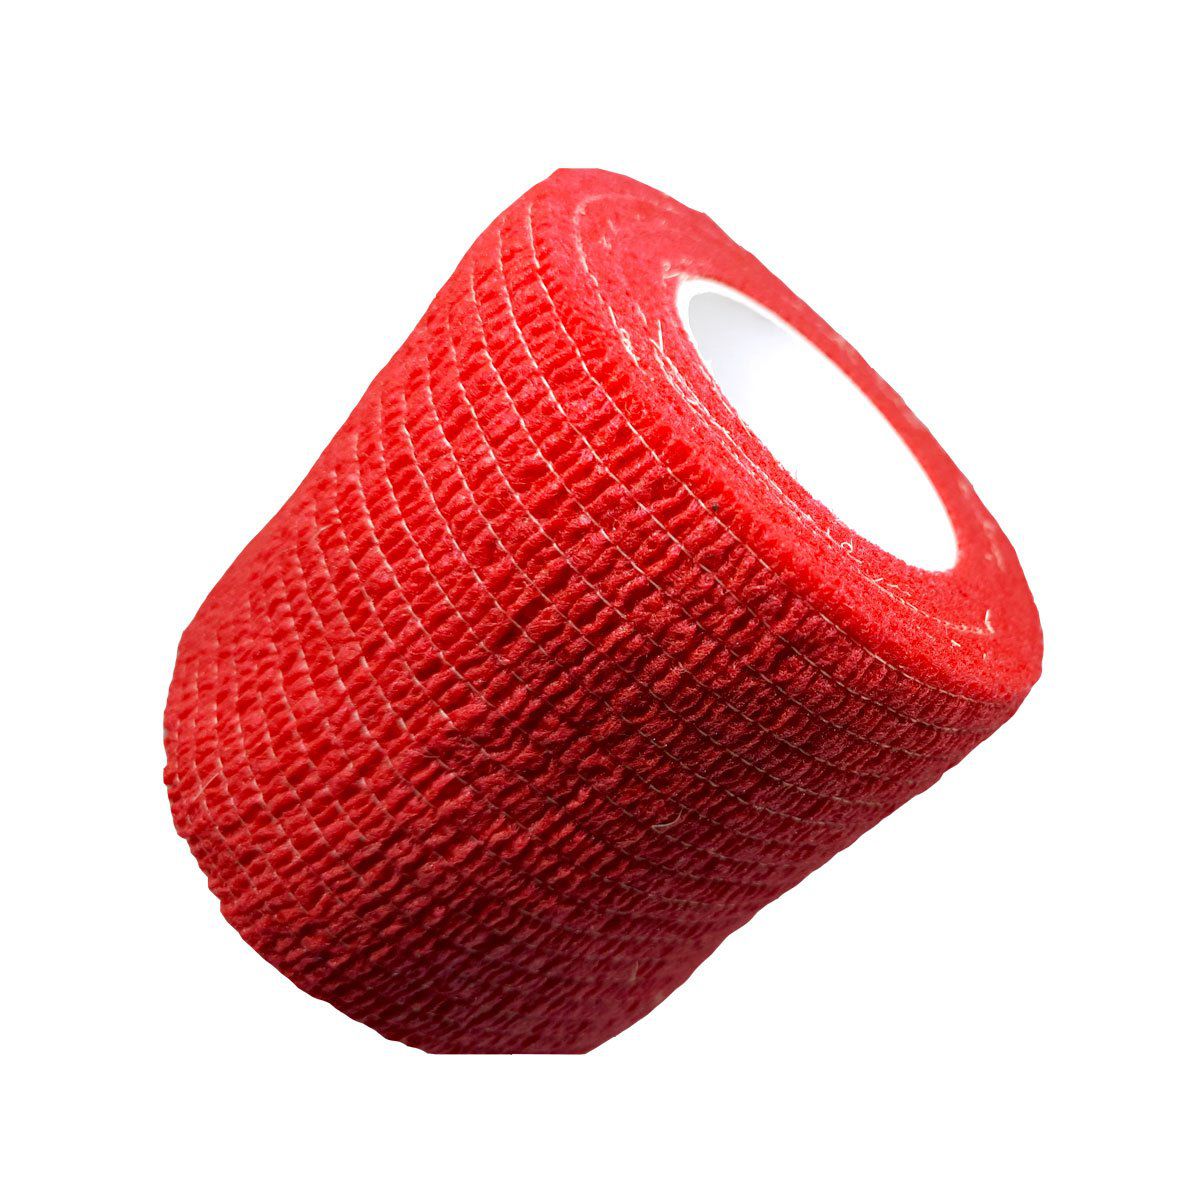 Fita P/ Camuflagem Albatroz Camo Tape FT-RED 5 Mts Vermelho